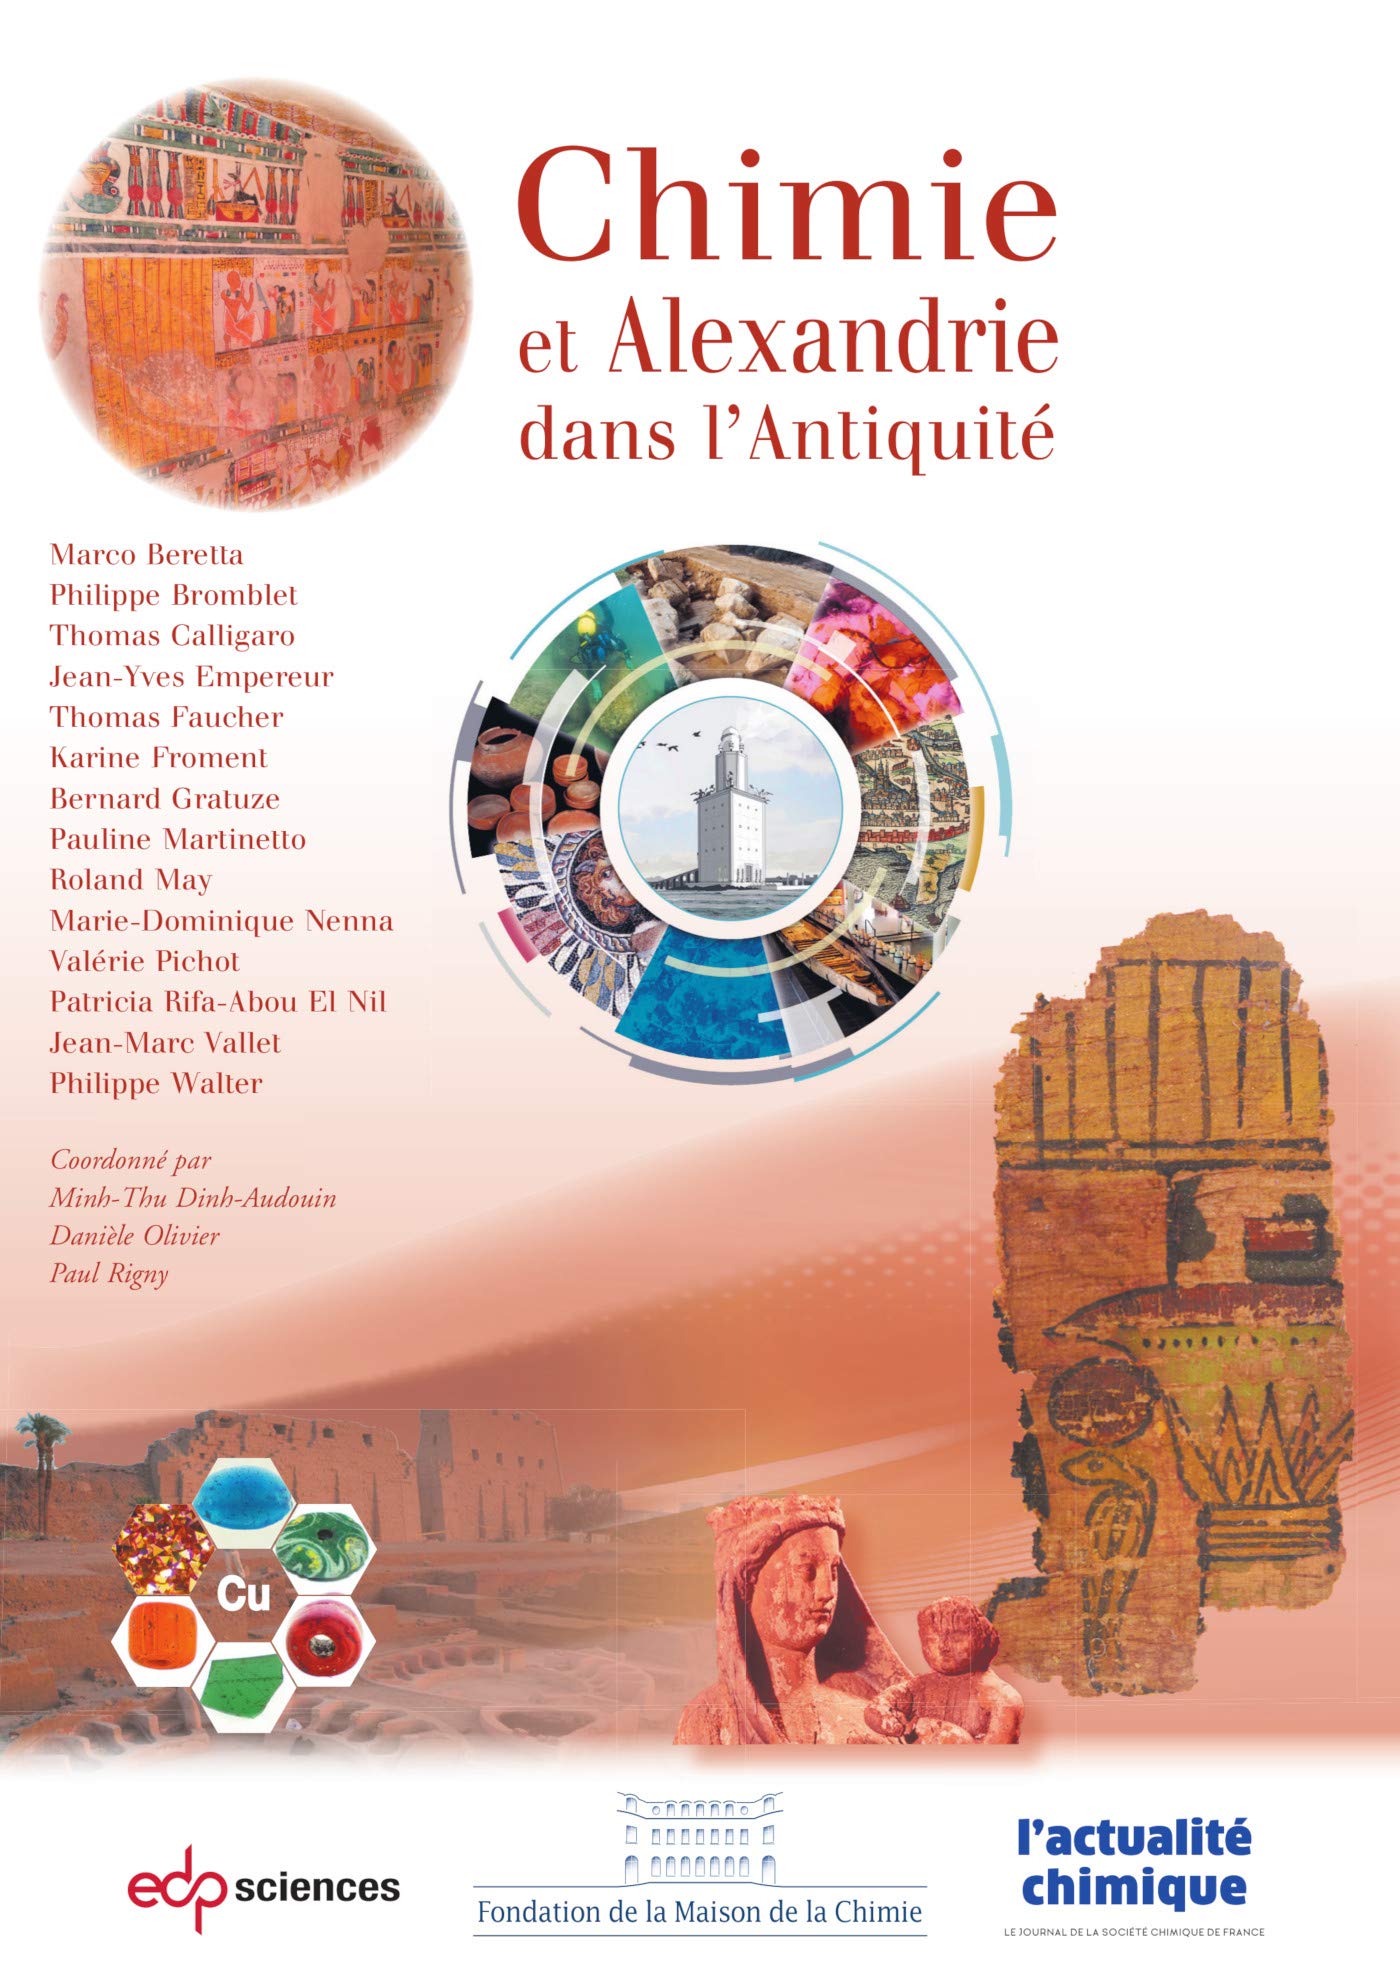 Chimie et Alexandrie dans l'Antiquité, 2020, 280 p.